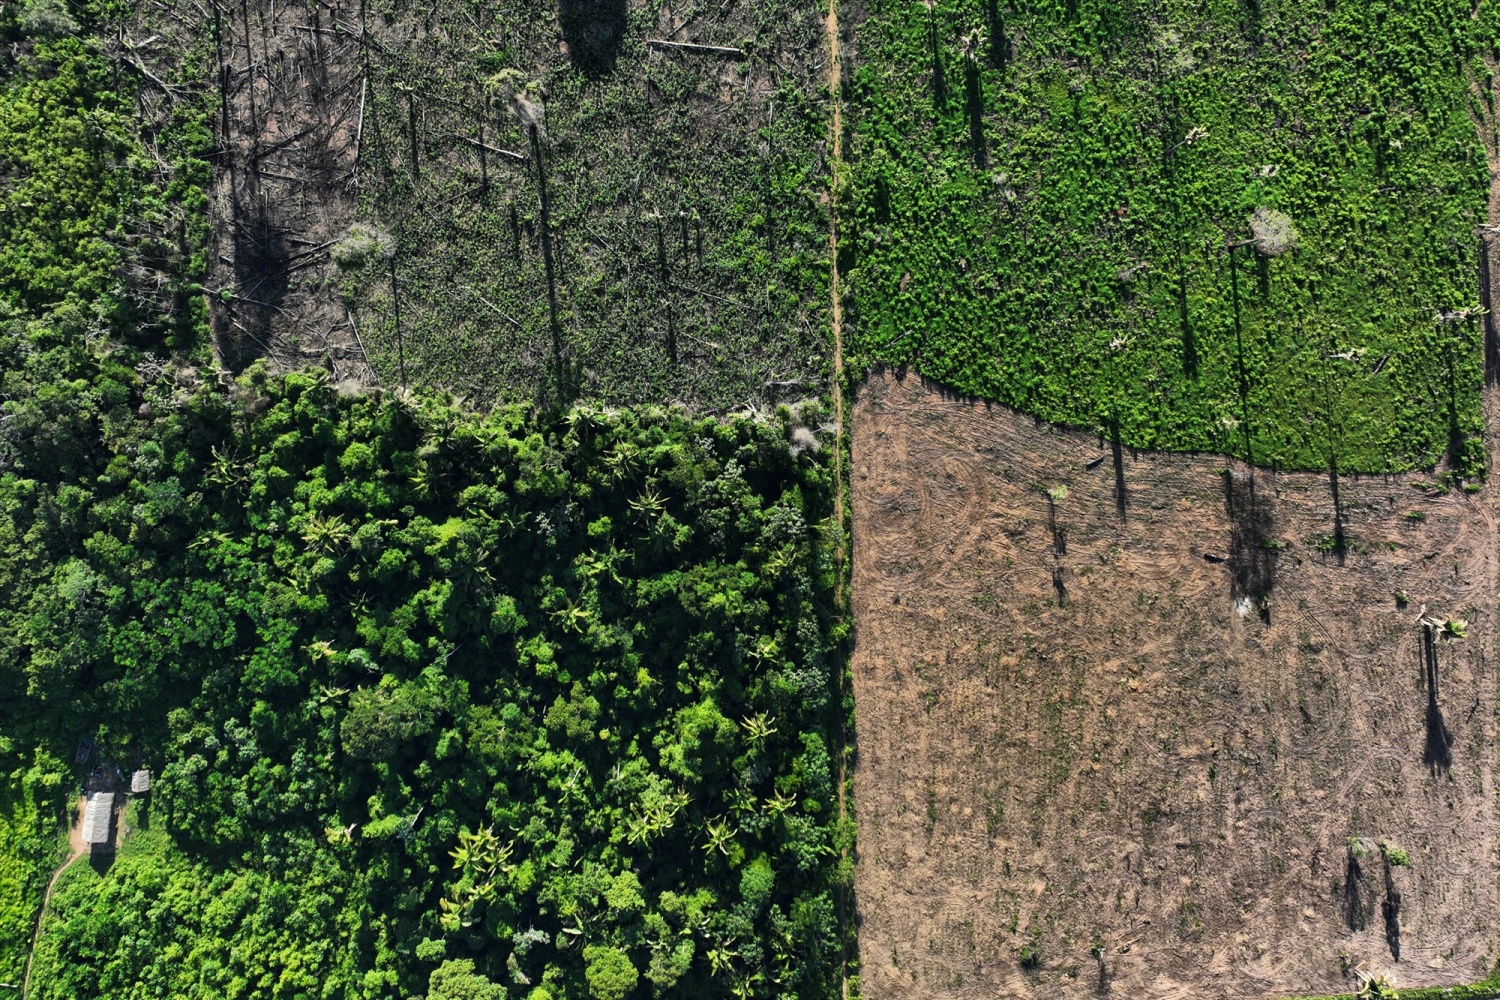 EU lawmakers back ban on goods linked to deforestation